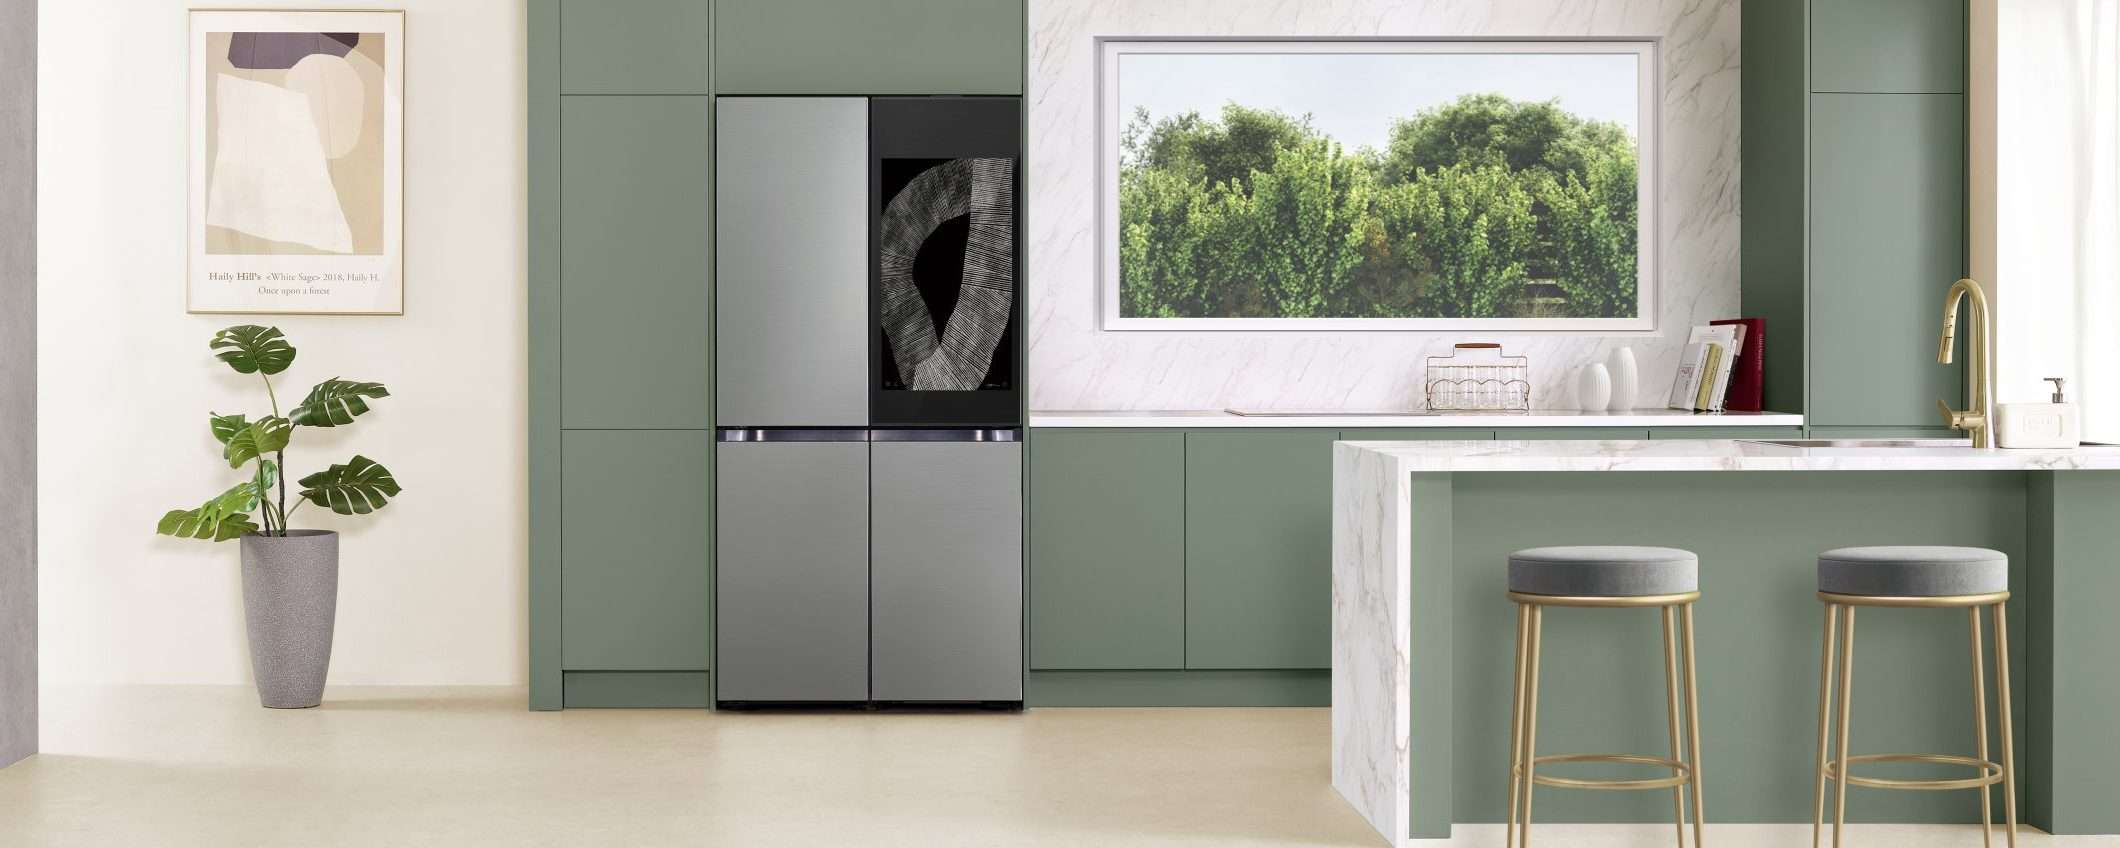 Samsung svela un frigorifero che riconosce il cibo